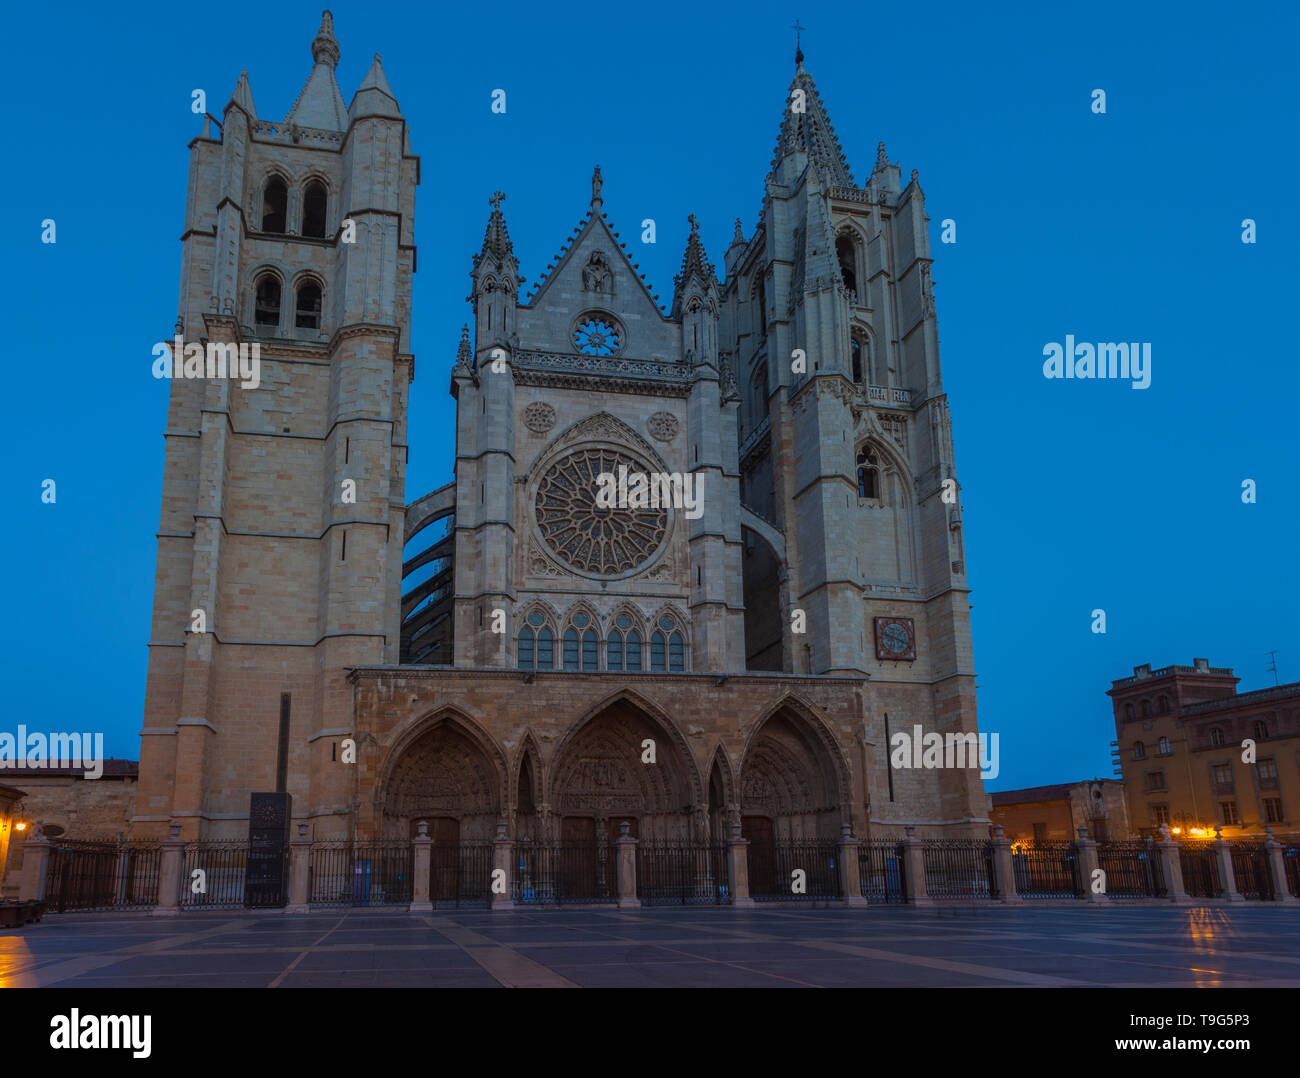 Cathédrale gothique de Leon. Castilla y Leon, Espagne. Banque D'Images